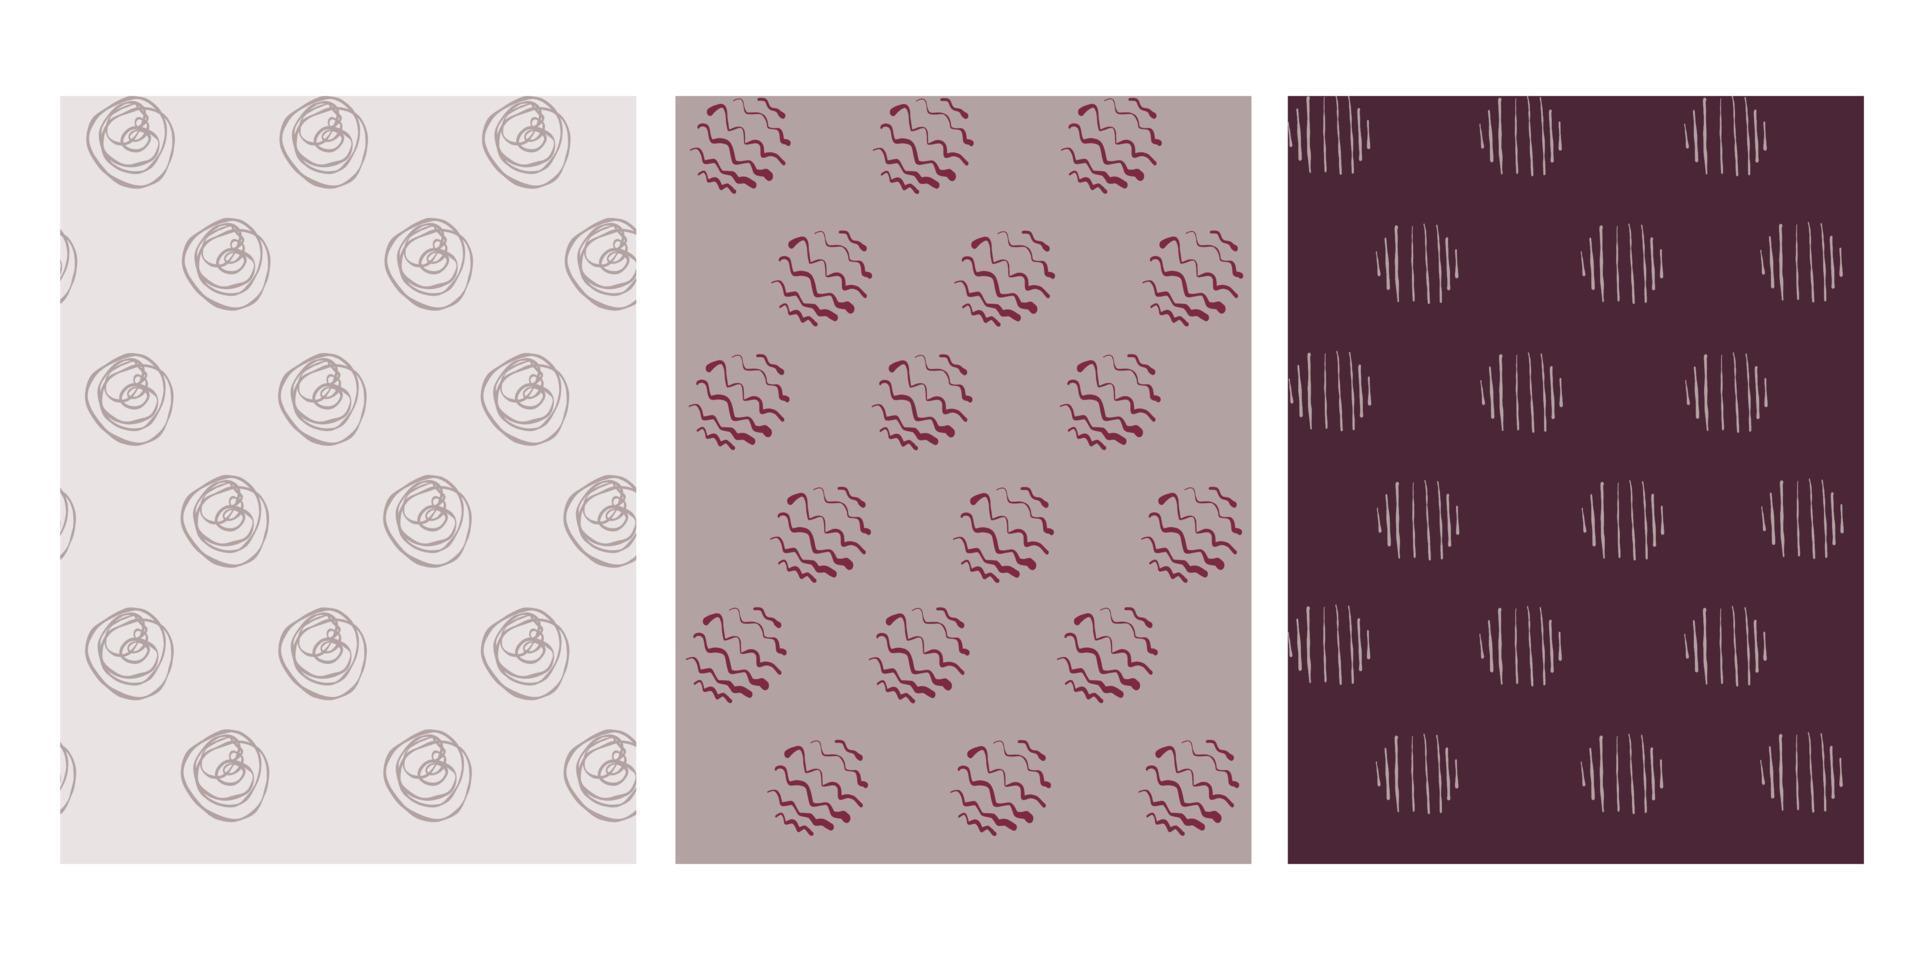 ensemble de doodle de motifs de cercles modernes sans soudure géométriques abstraits dessinés à la main rouge, beige, bordeaux. jolie collection de vecteurs pour papier, tissu, livre, cuisine, enfants. vecteur